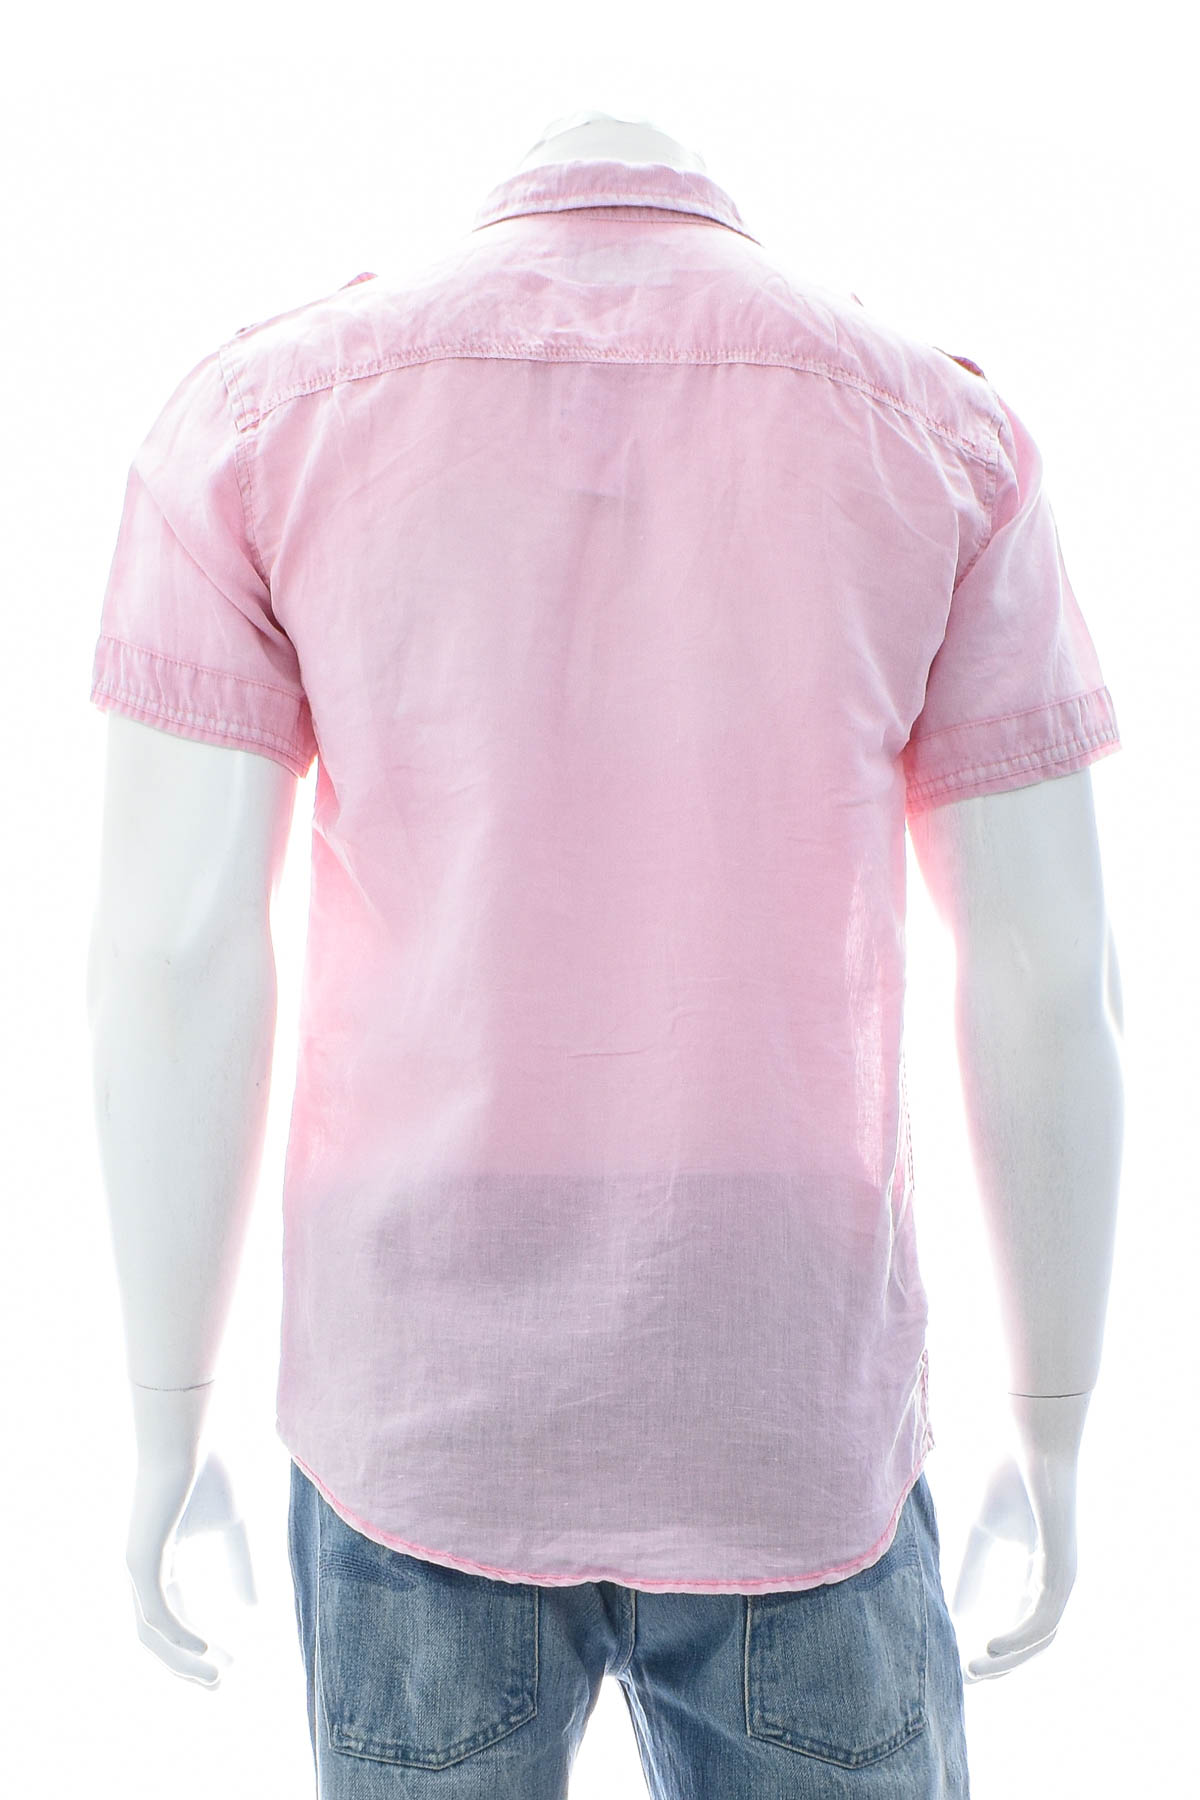 Ανδρικό πουκάμισο - Pull & Bear - 1